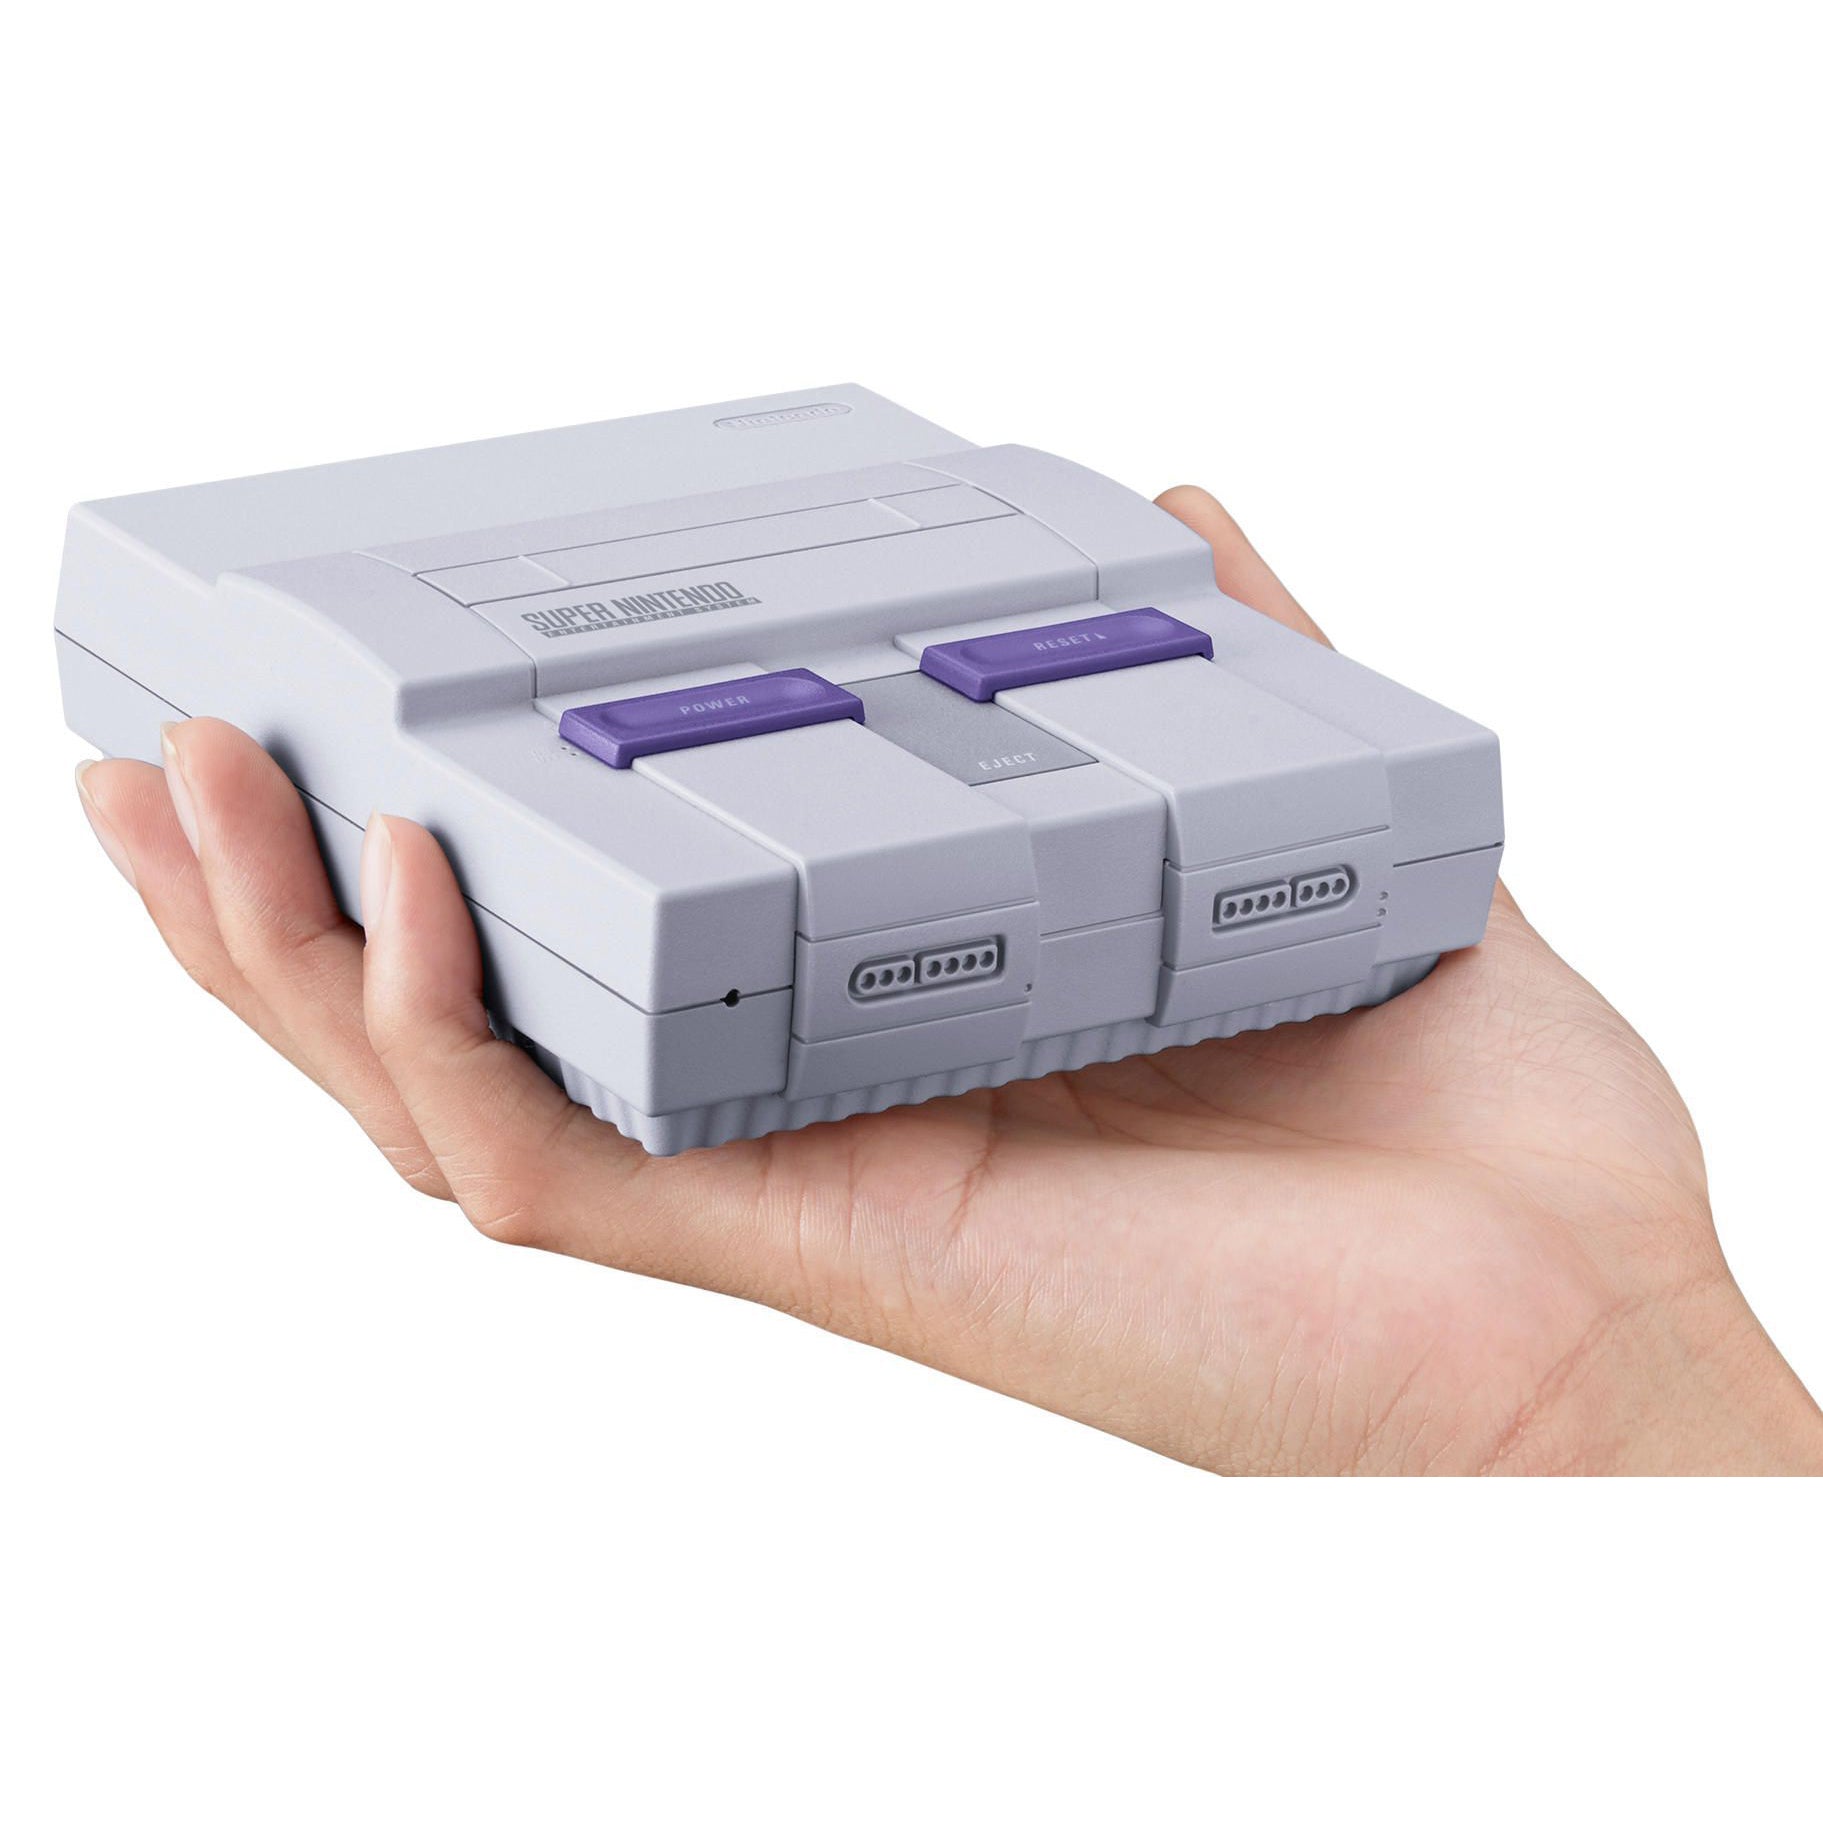 Emulador de Nintendo com 660 jogos e 2 controles